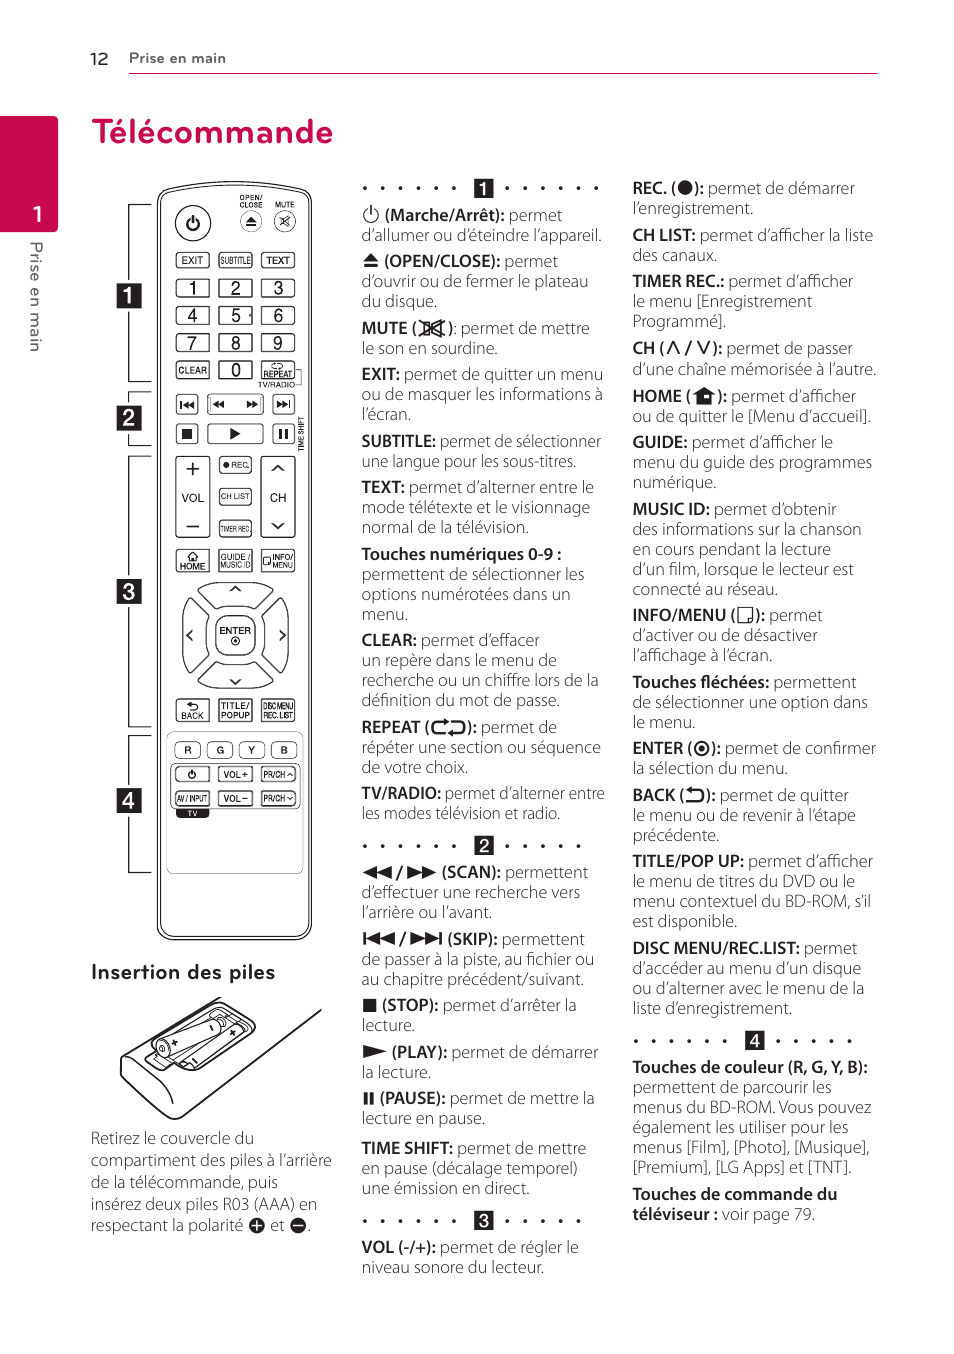 Télécommande, 12 télécommande, Insertion des piles | LG HR922D Manuel d'utilisation | Page 12 / 94